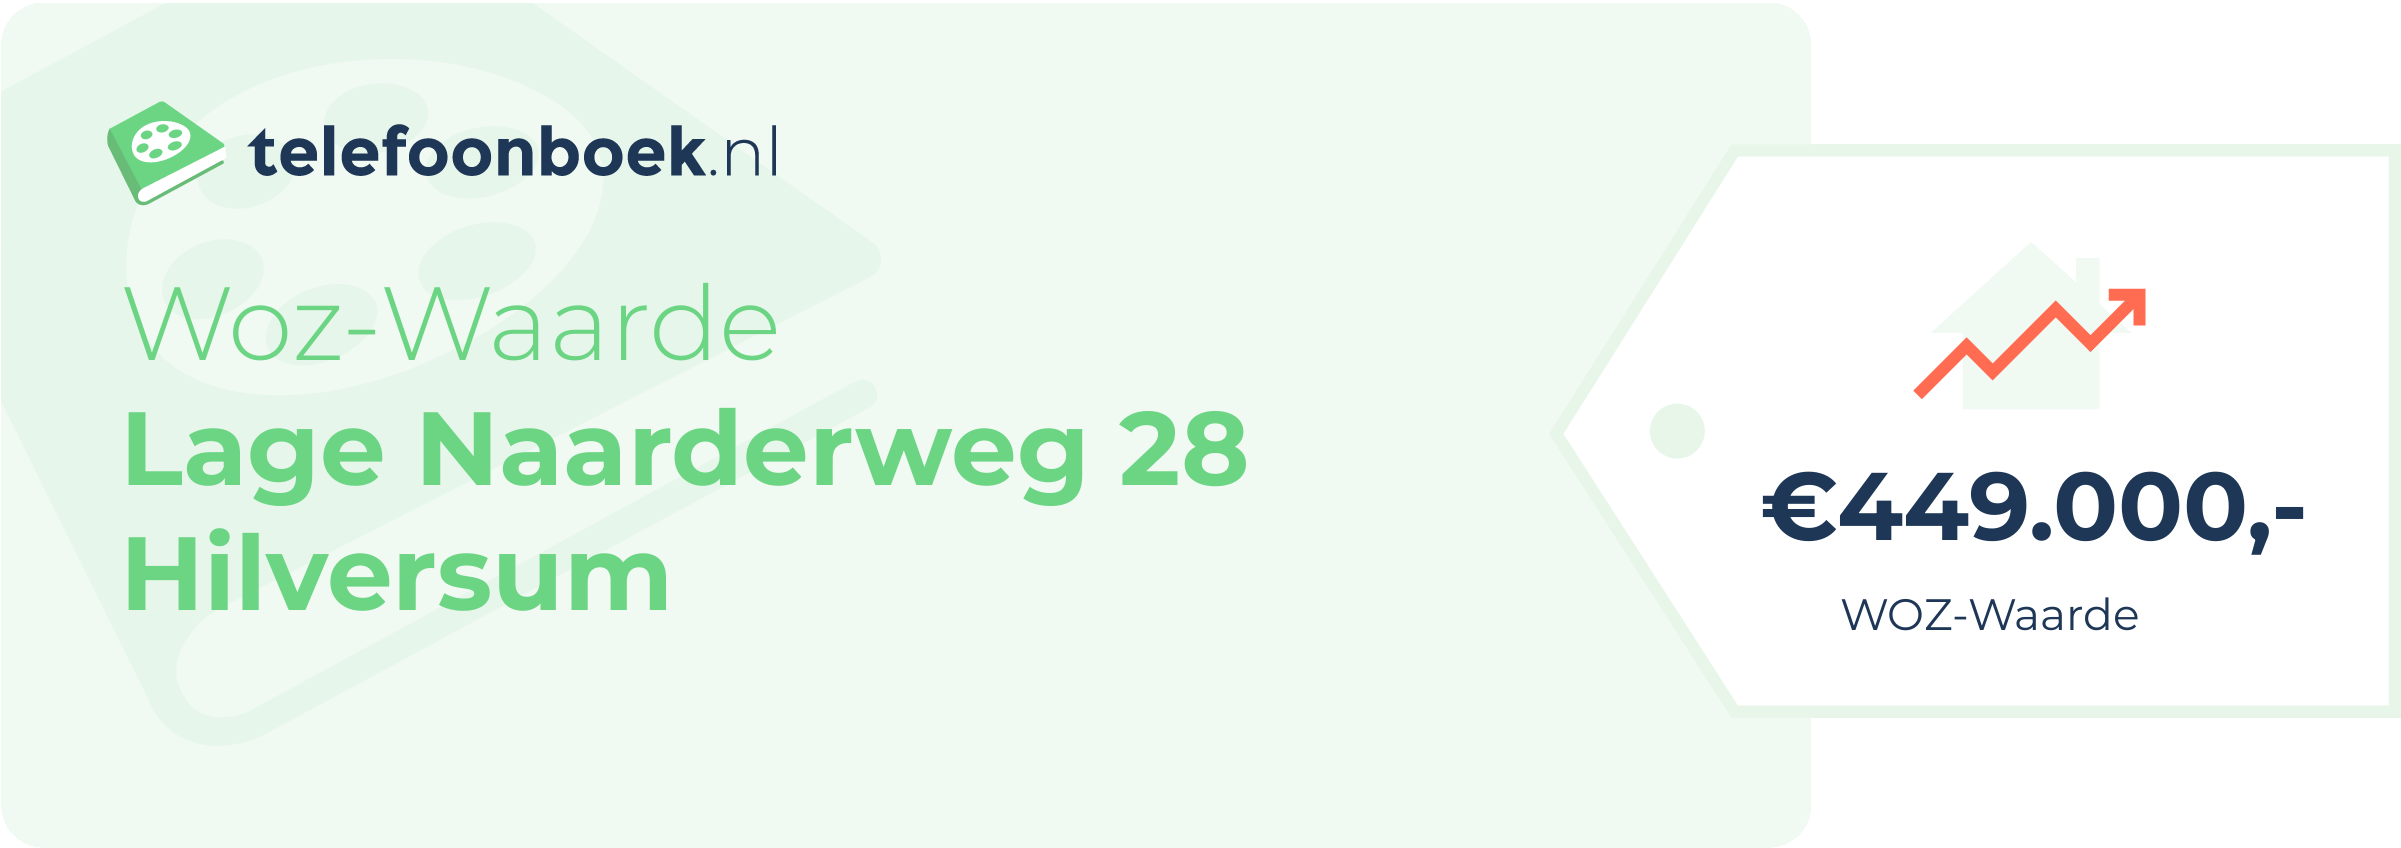 WOZ-waarde Lage Naarderweg 28 Hilversum